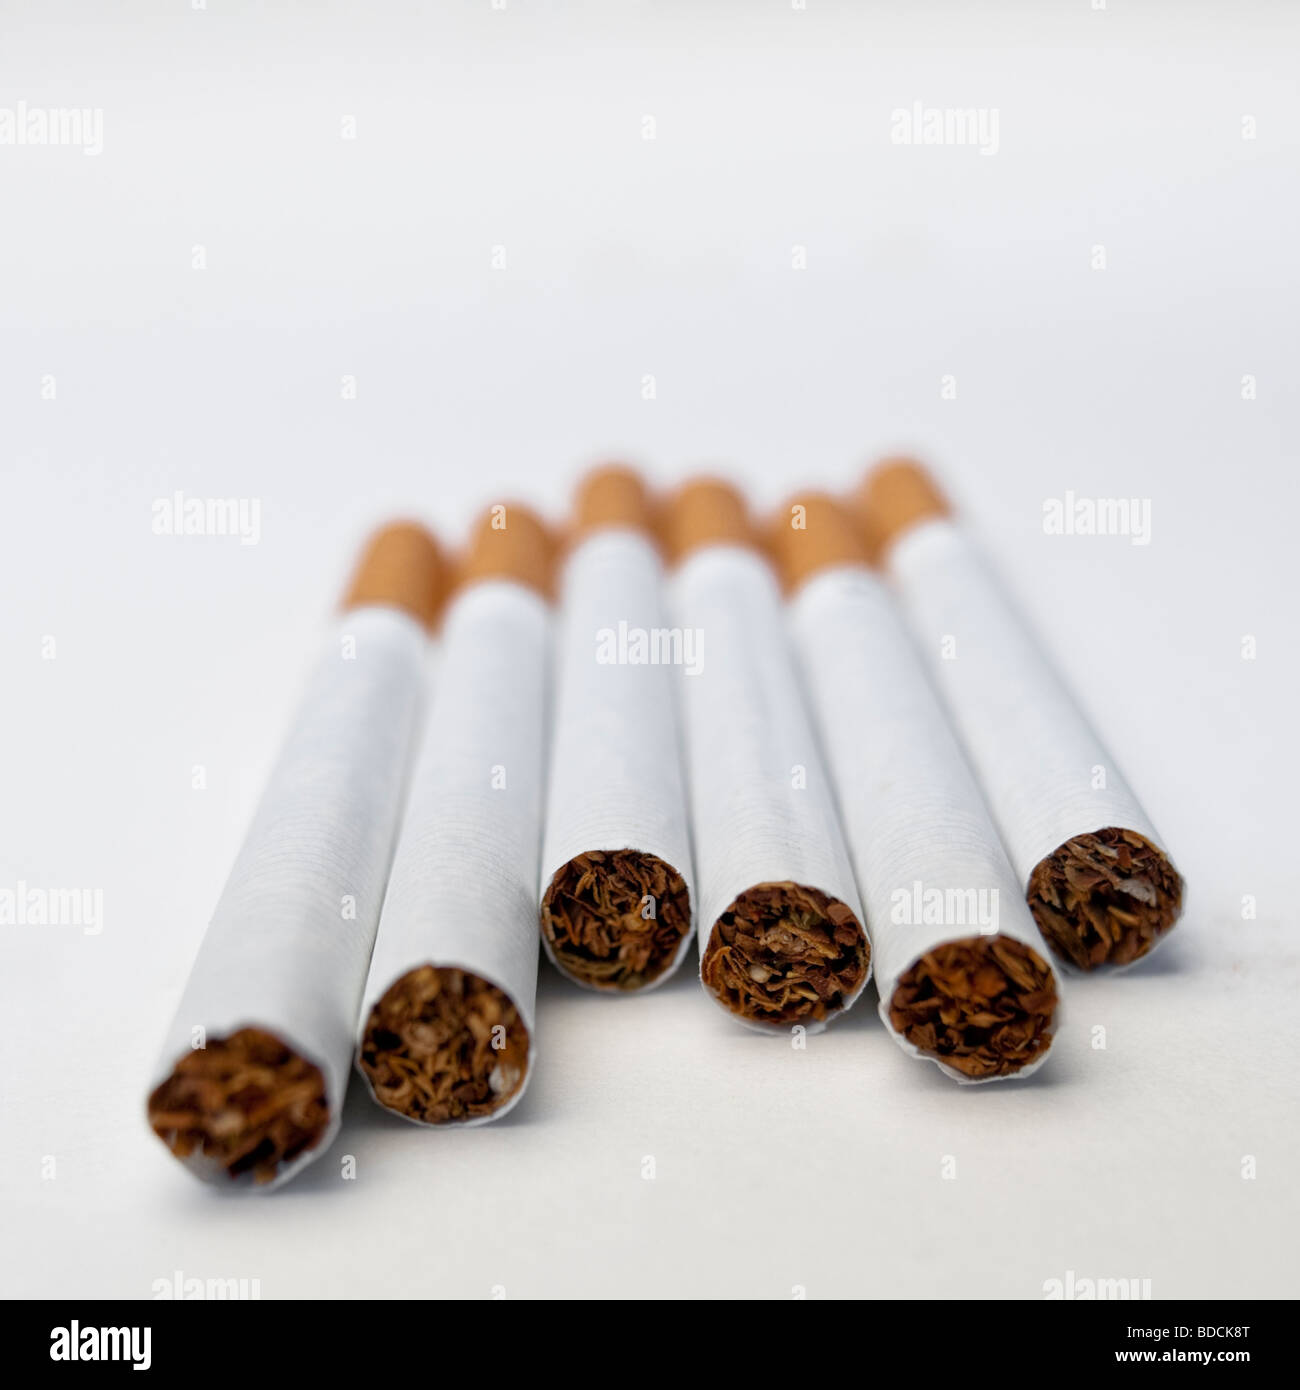 Cigarettes. Stock Photo